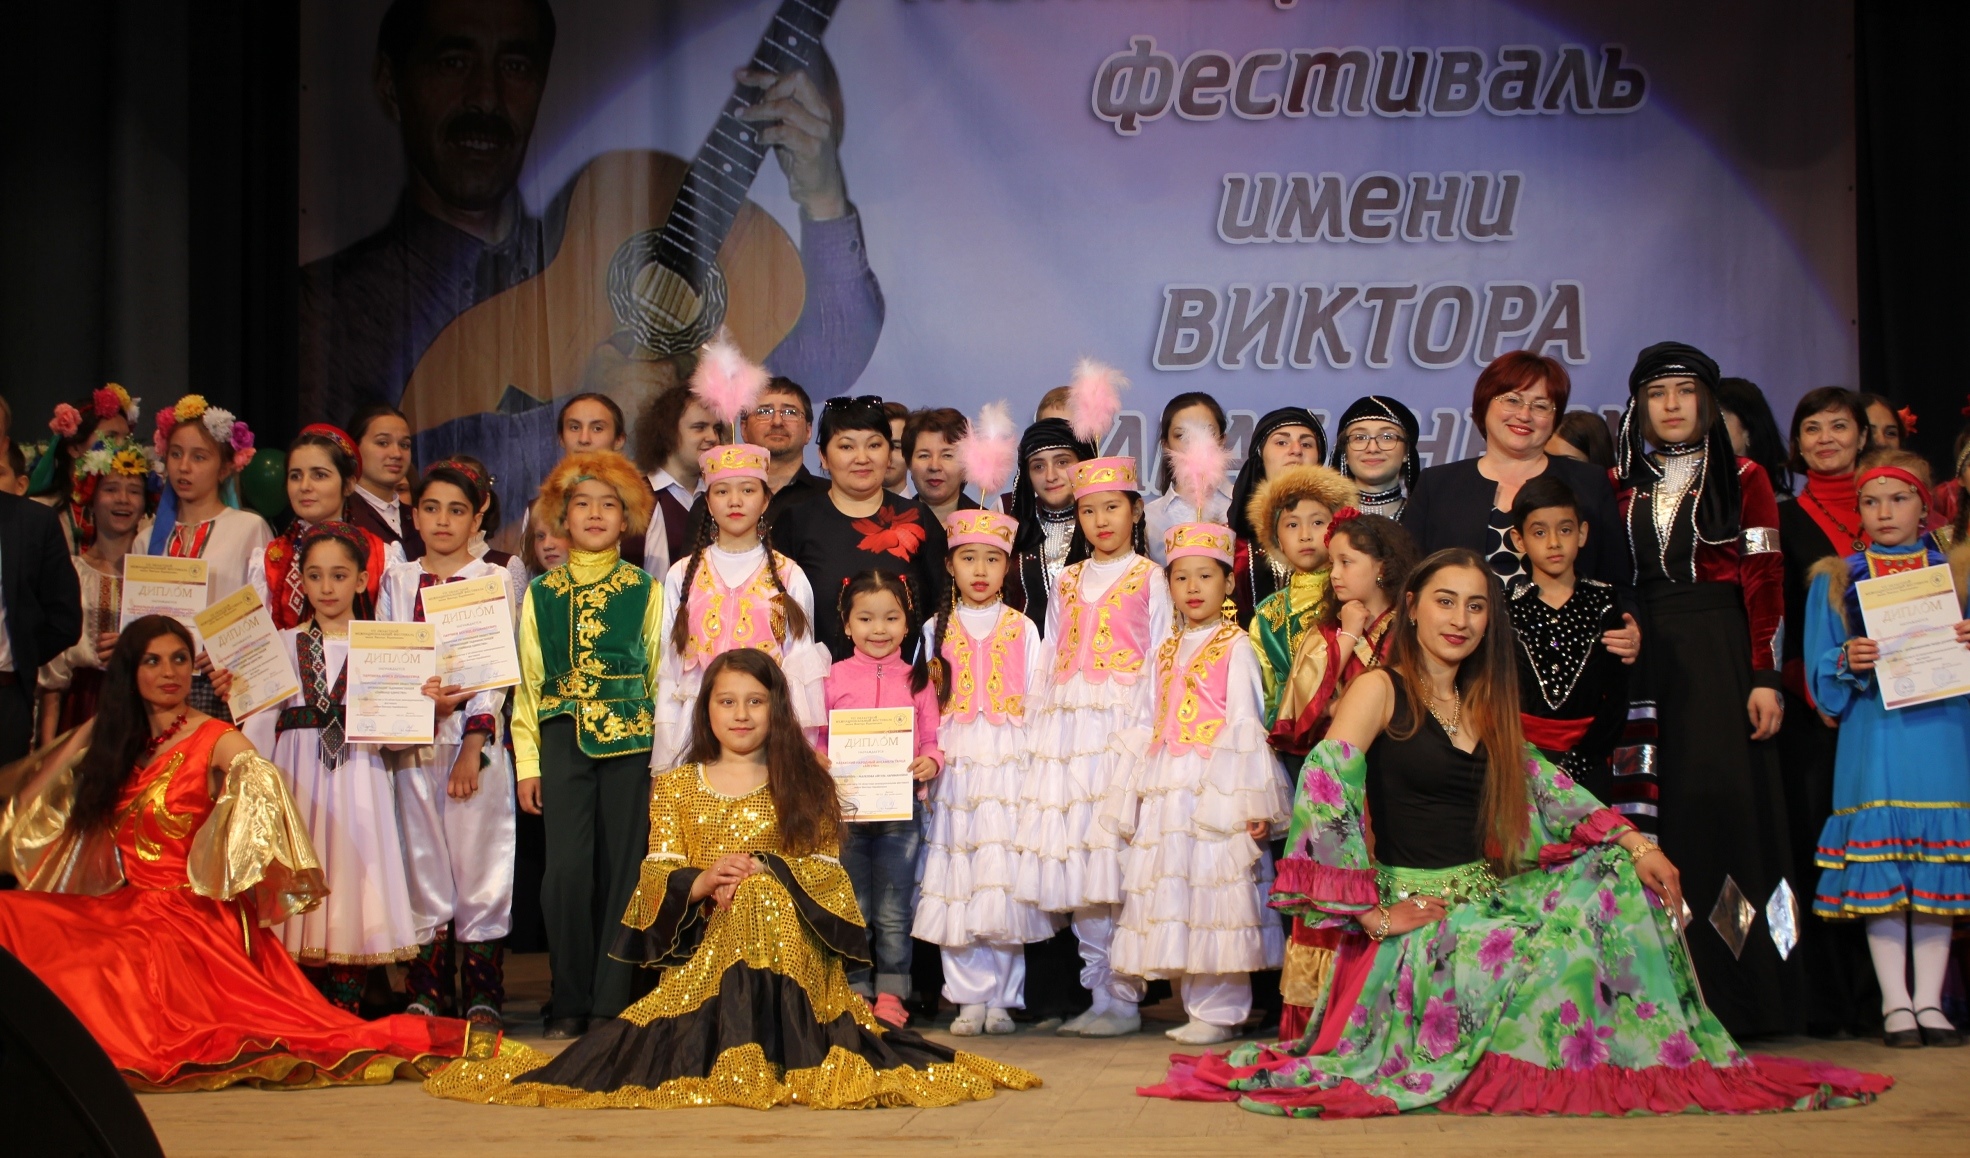 Фестиваль имени В.В.Карабаненко стал праздником для разных народов 